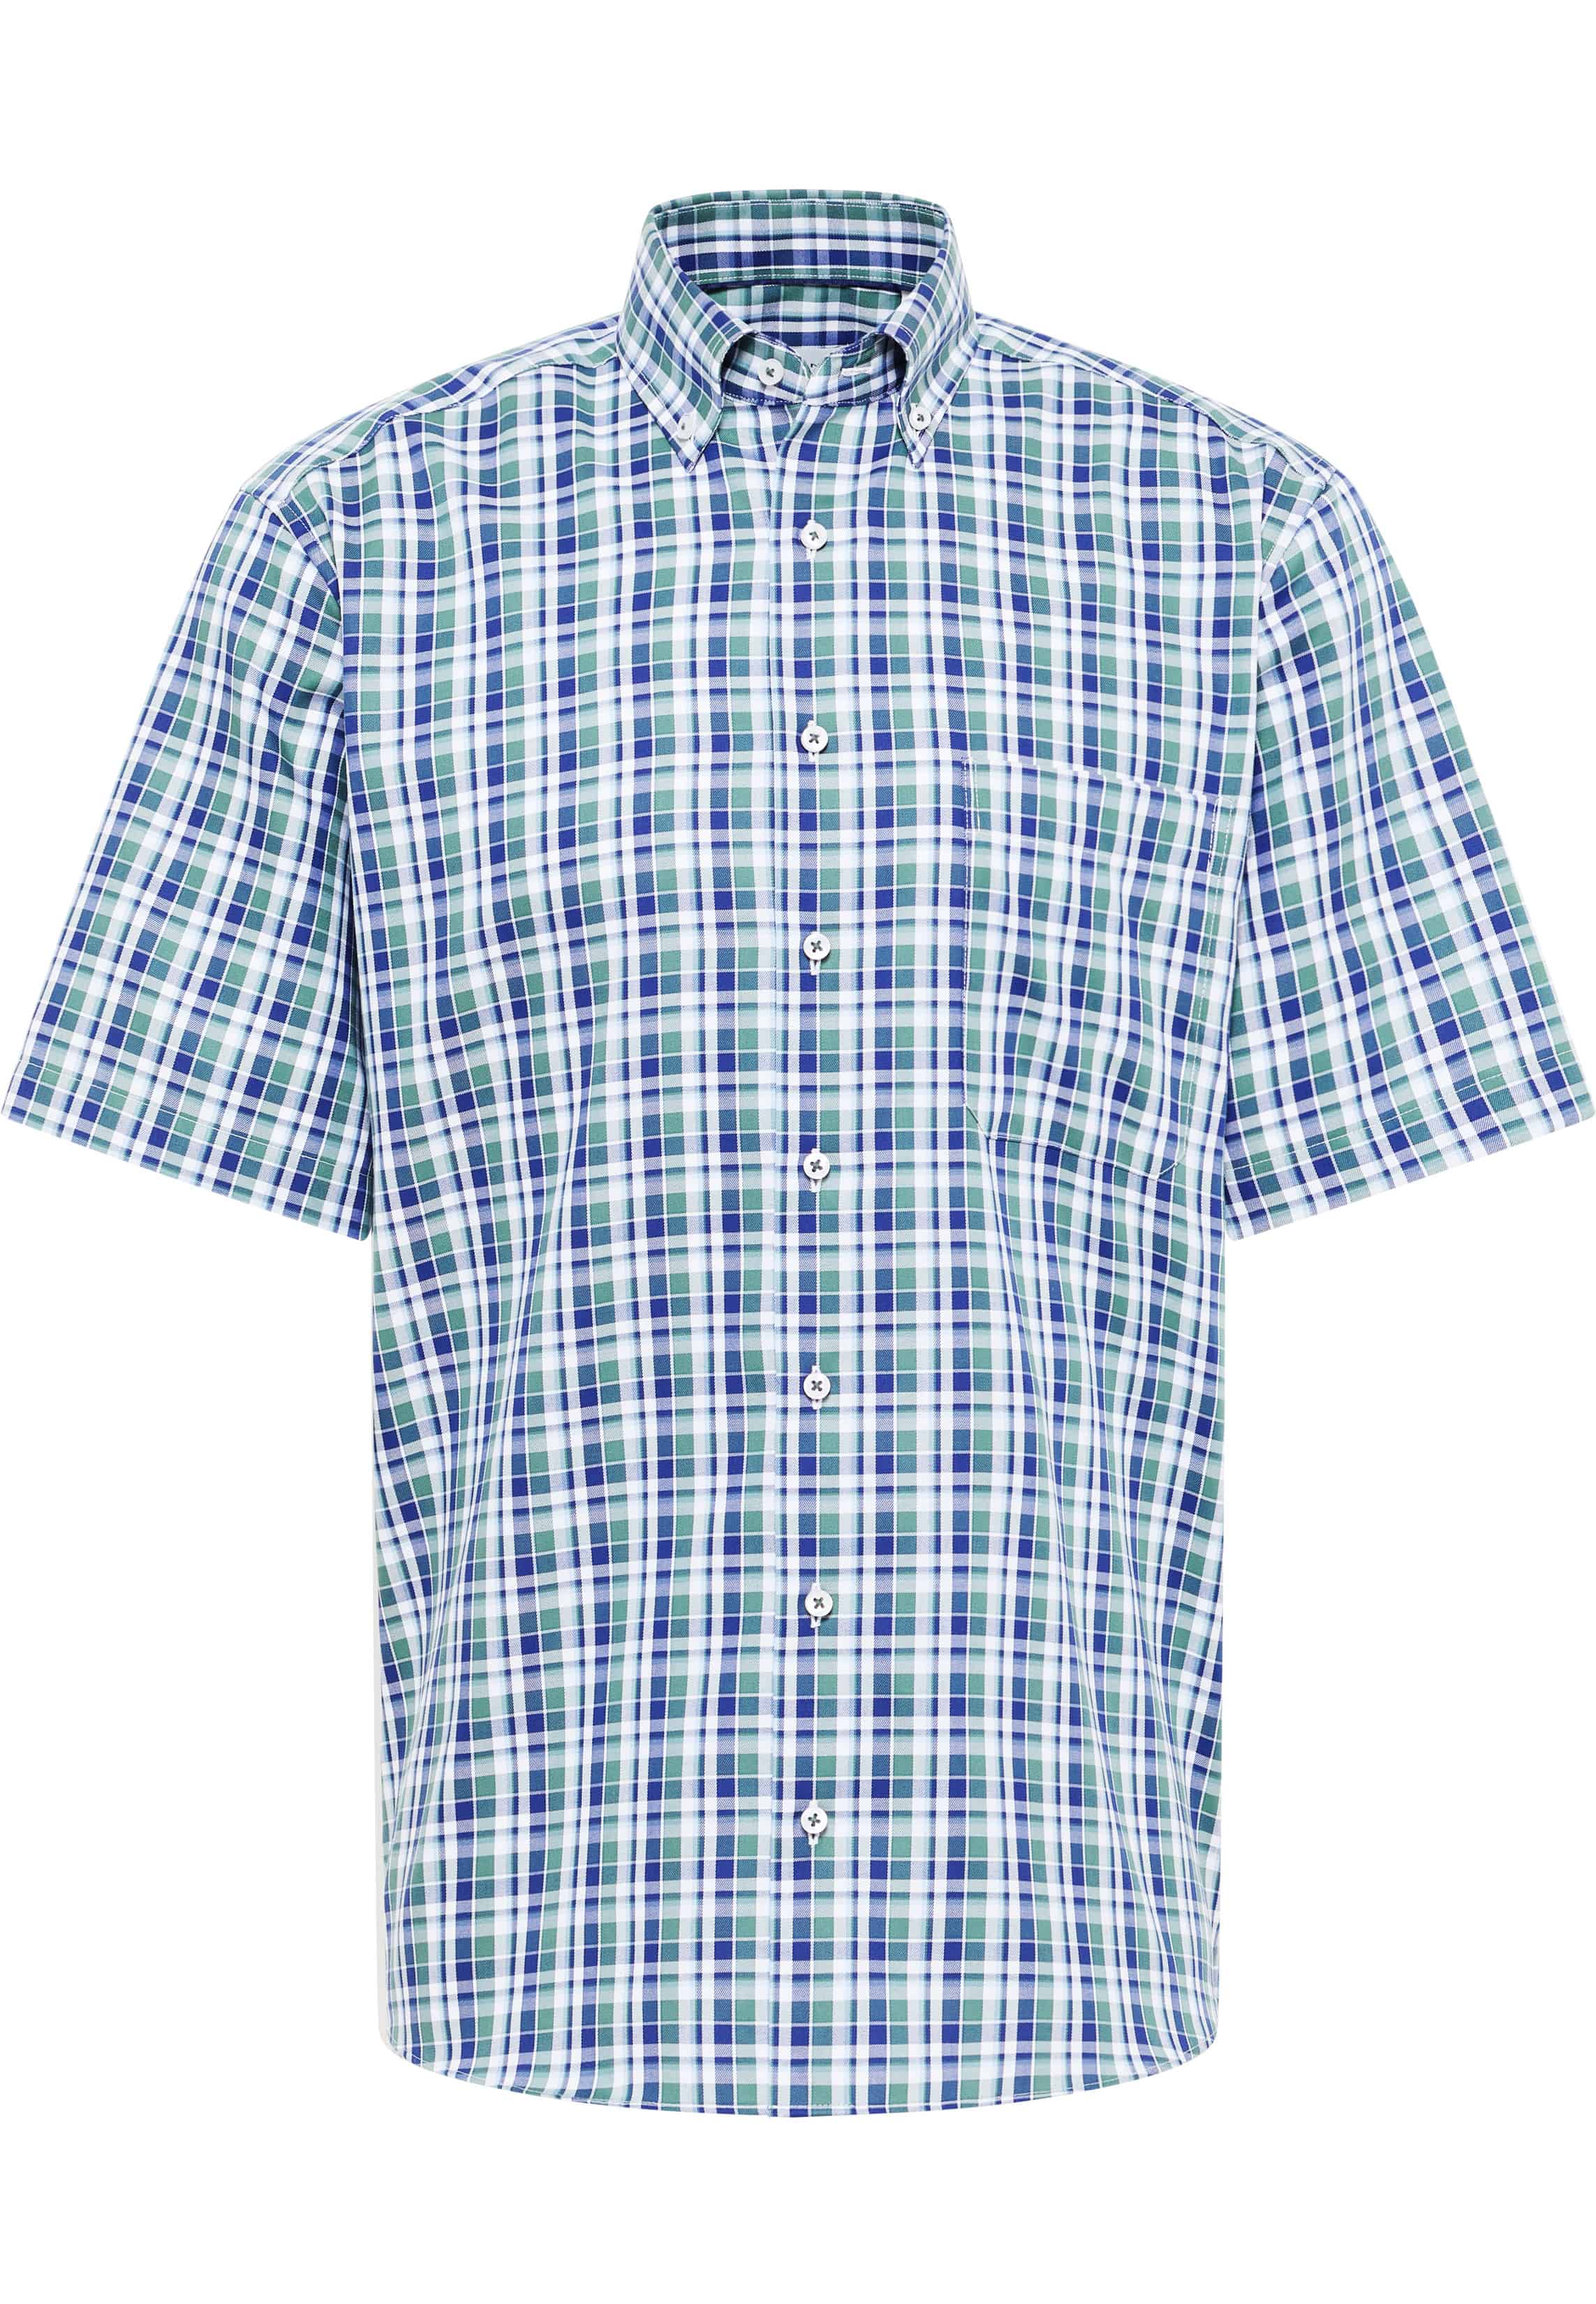 COMFORT FIT Shirt in fir checkered